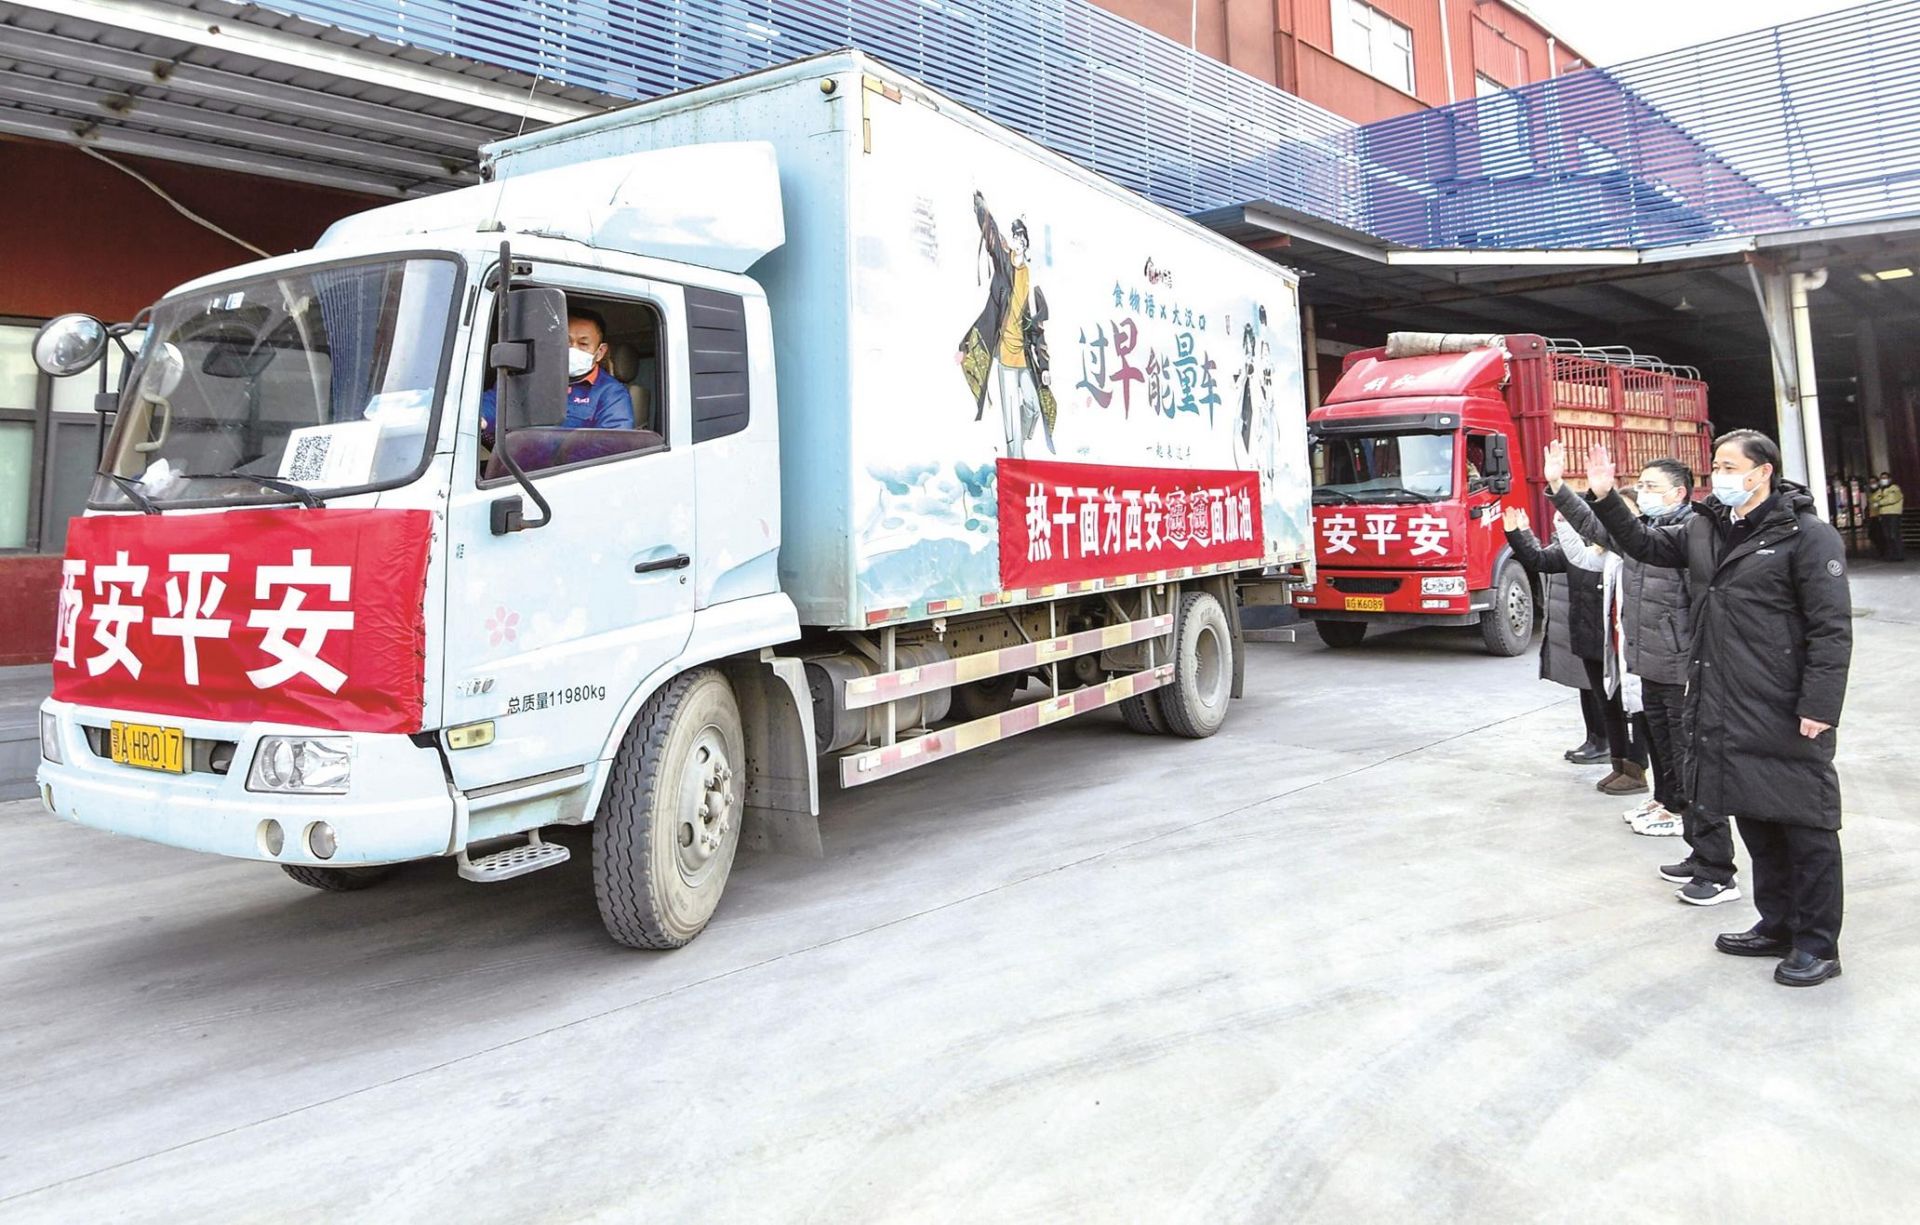 200箱热干面和30万只口罩来了 武汉餐饮业协会向西安捐赠13万元物资